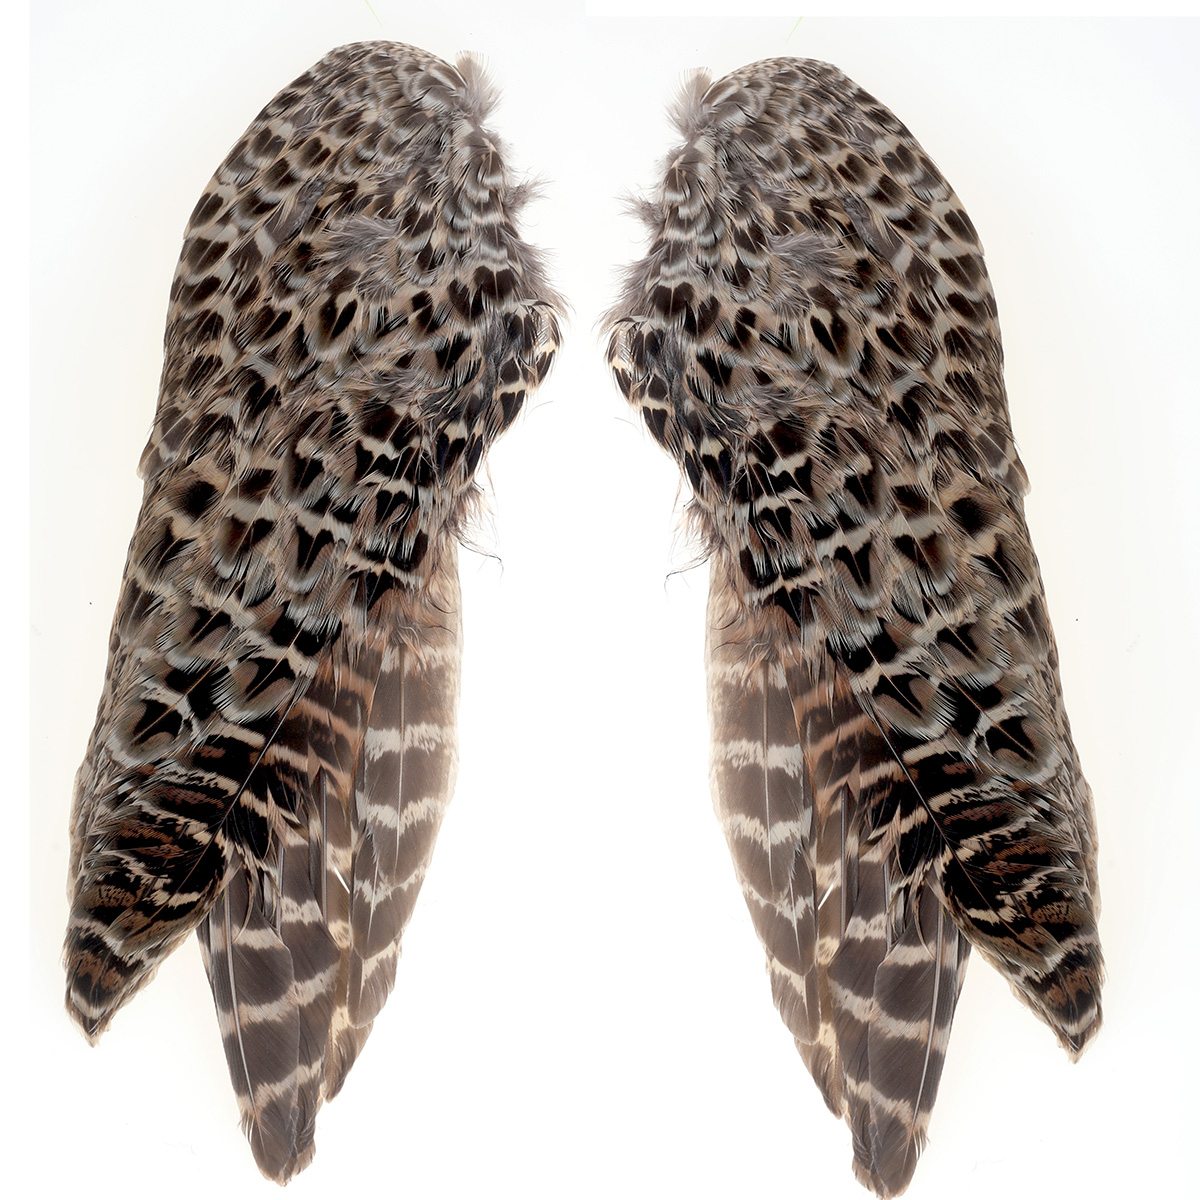 Pheasant Wings Hen